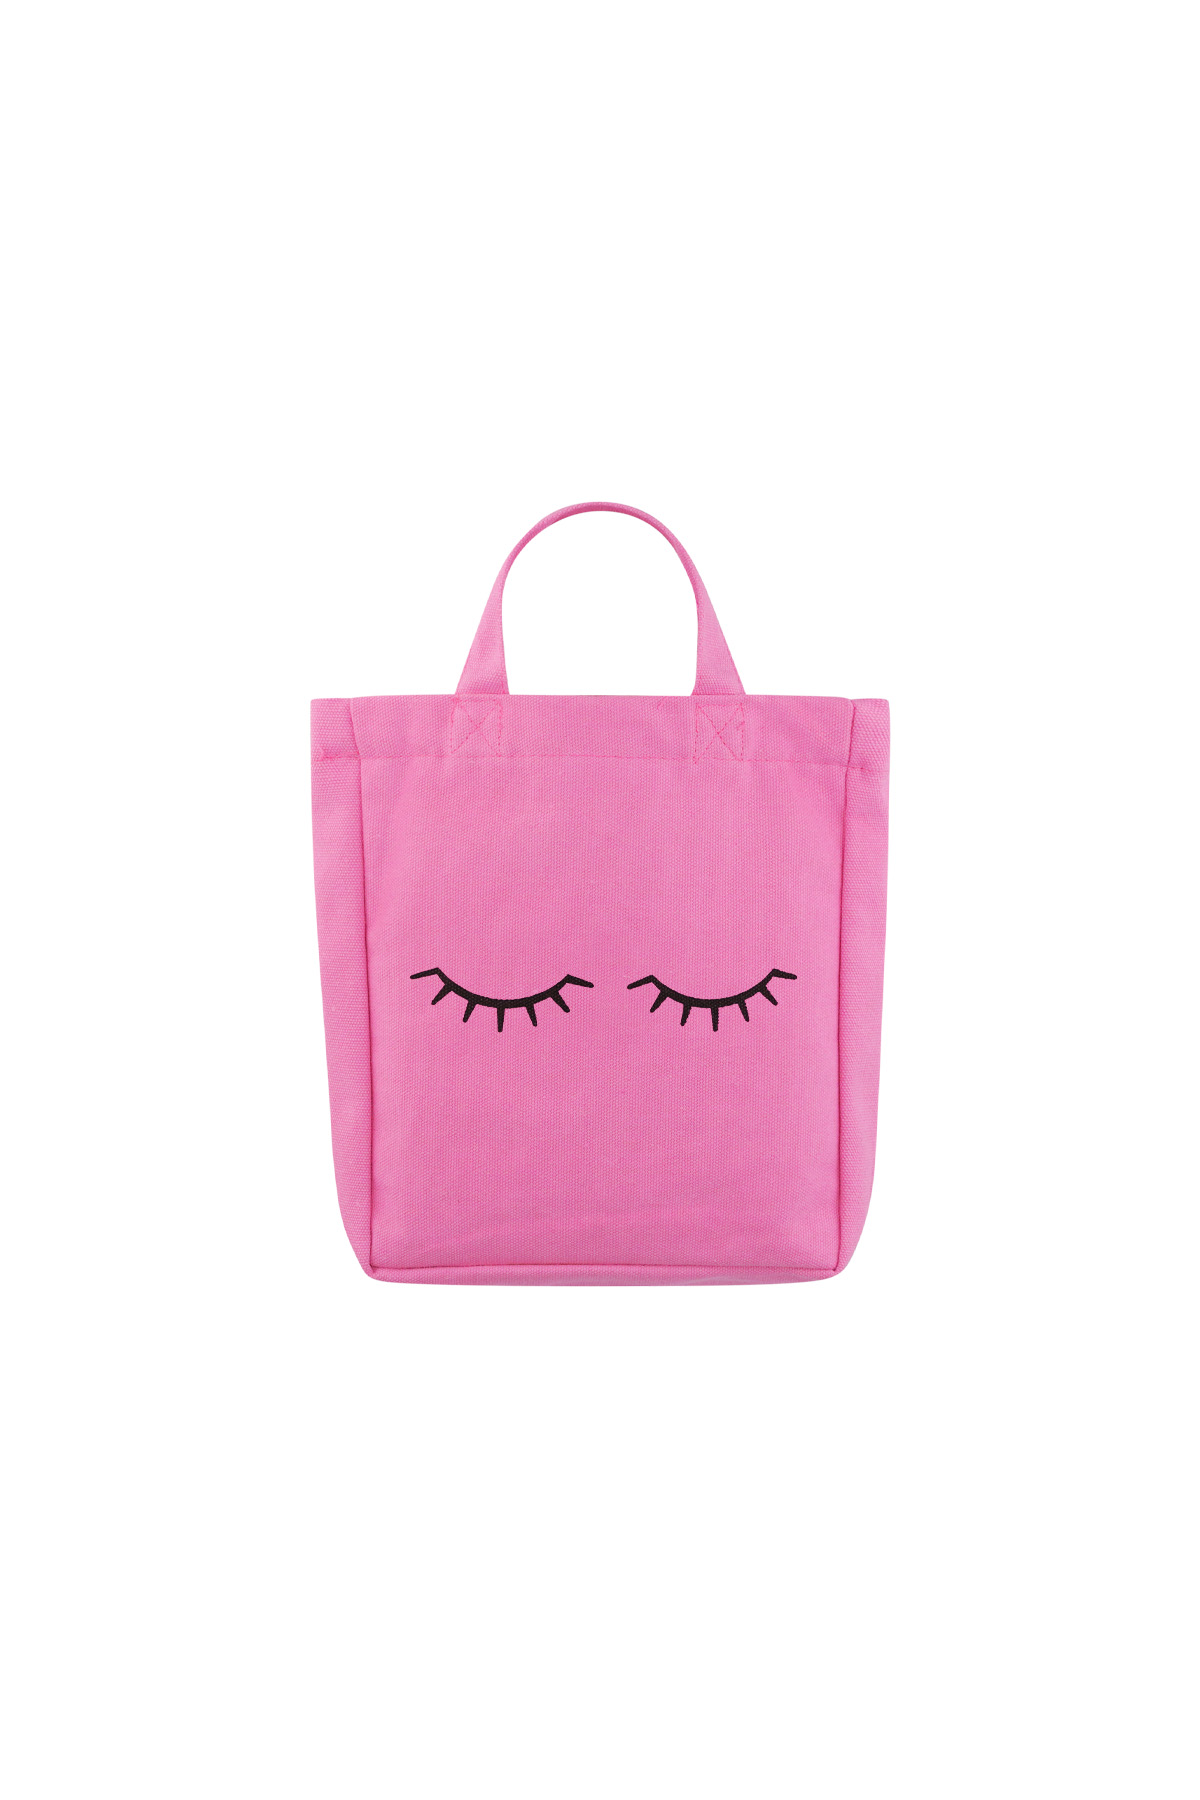 Small canvas bag eyelashes - pink h5 